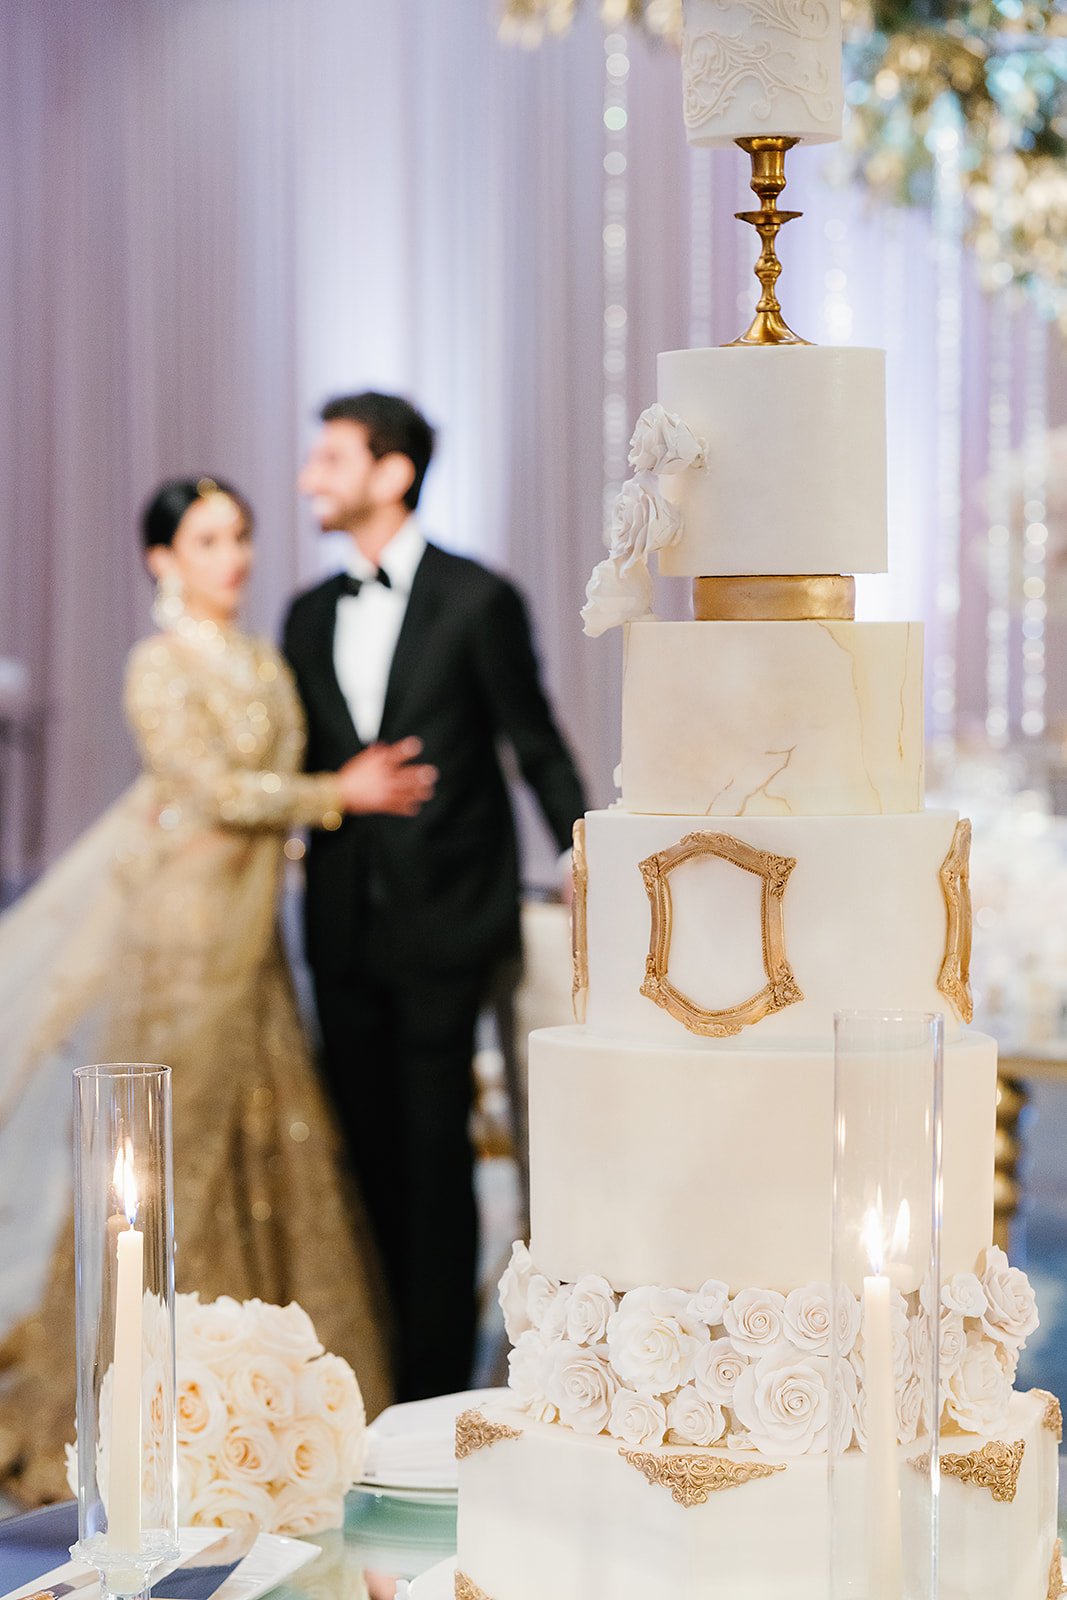 Bride and groom near fairytale wedding cake,